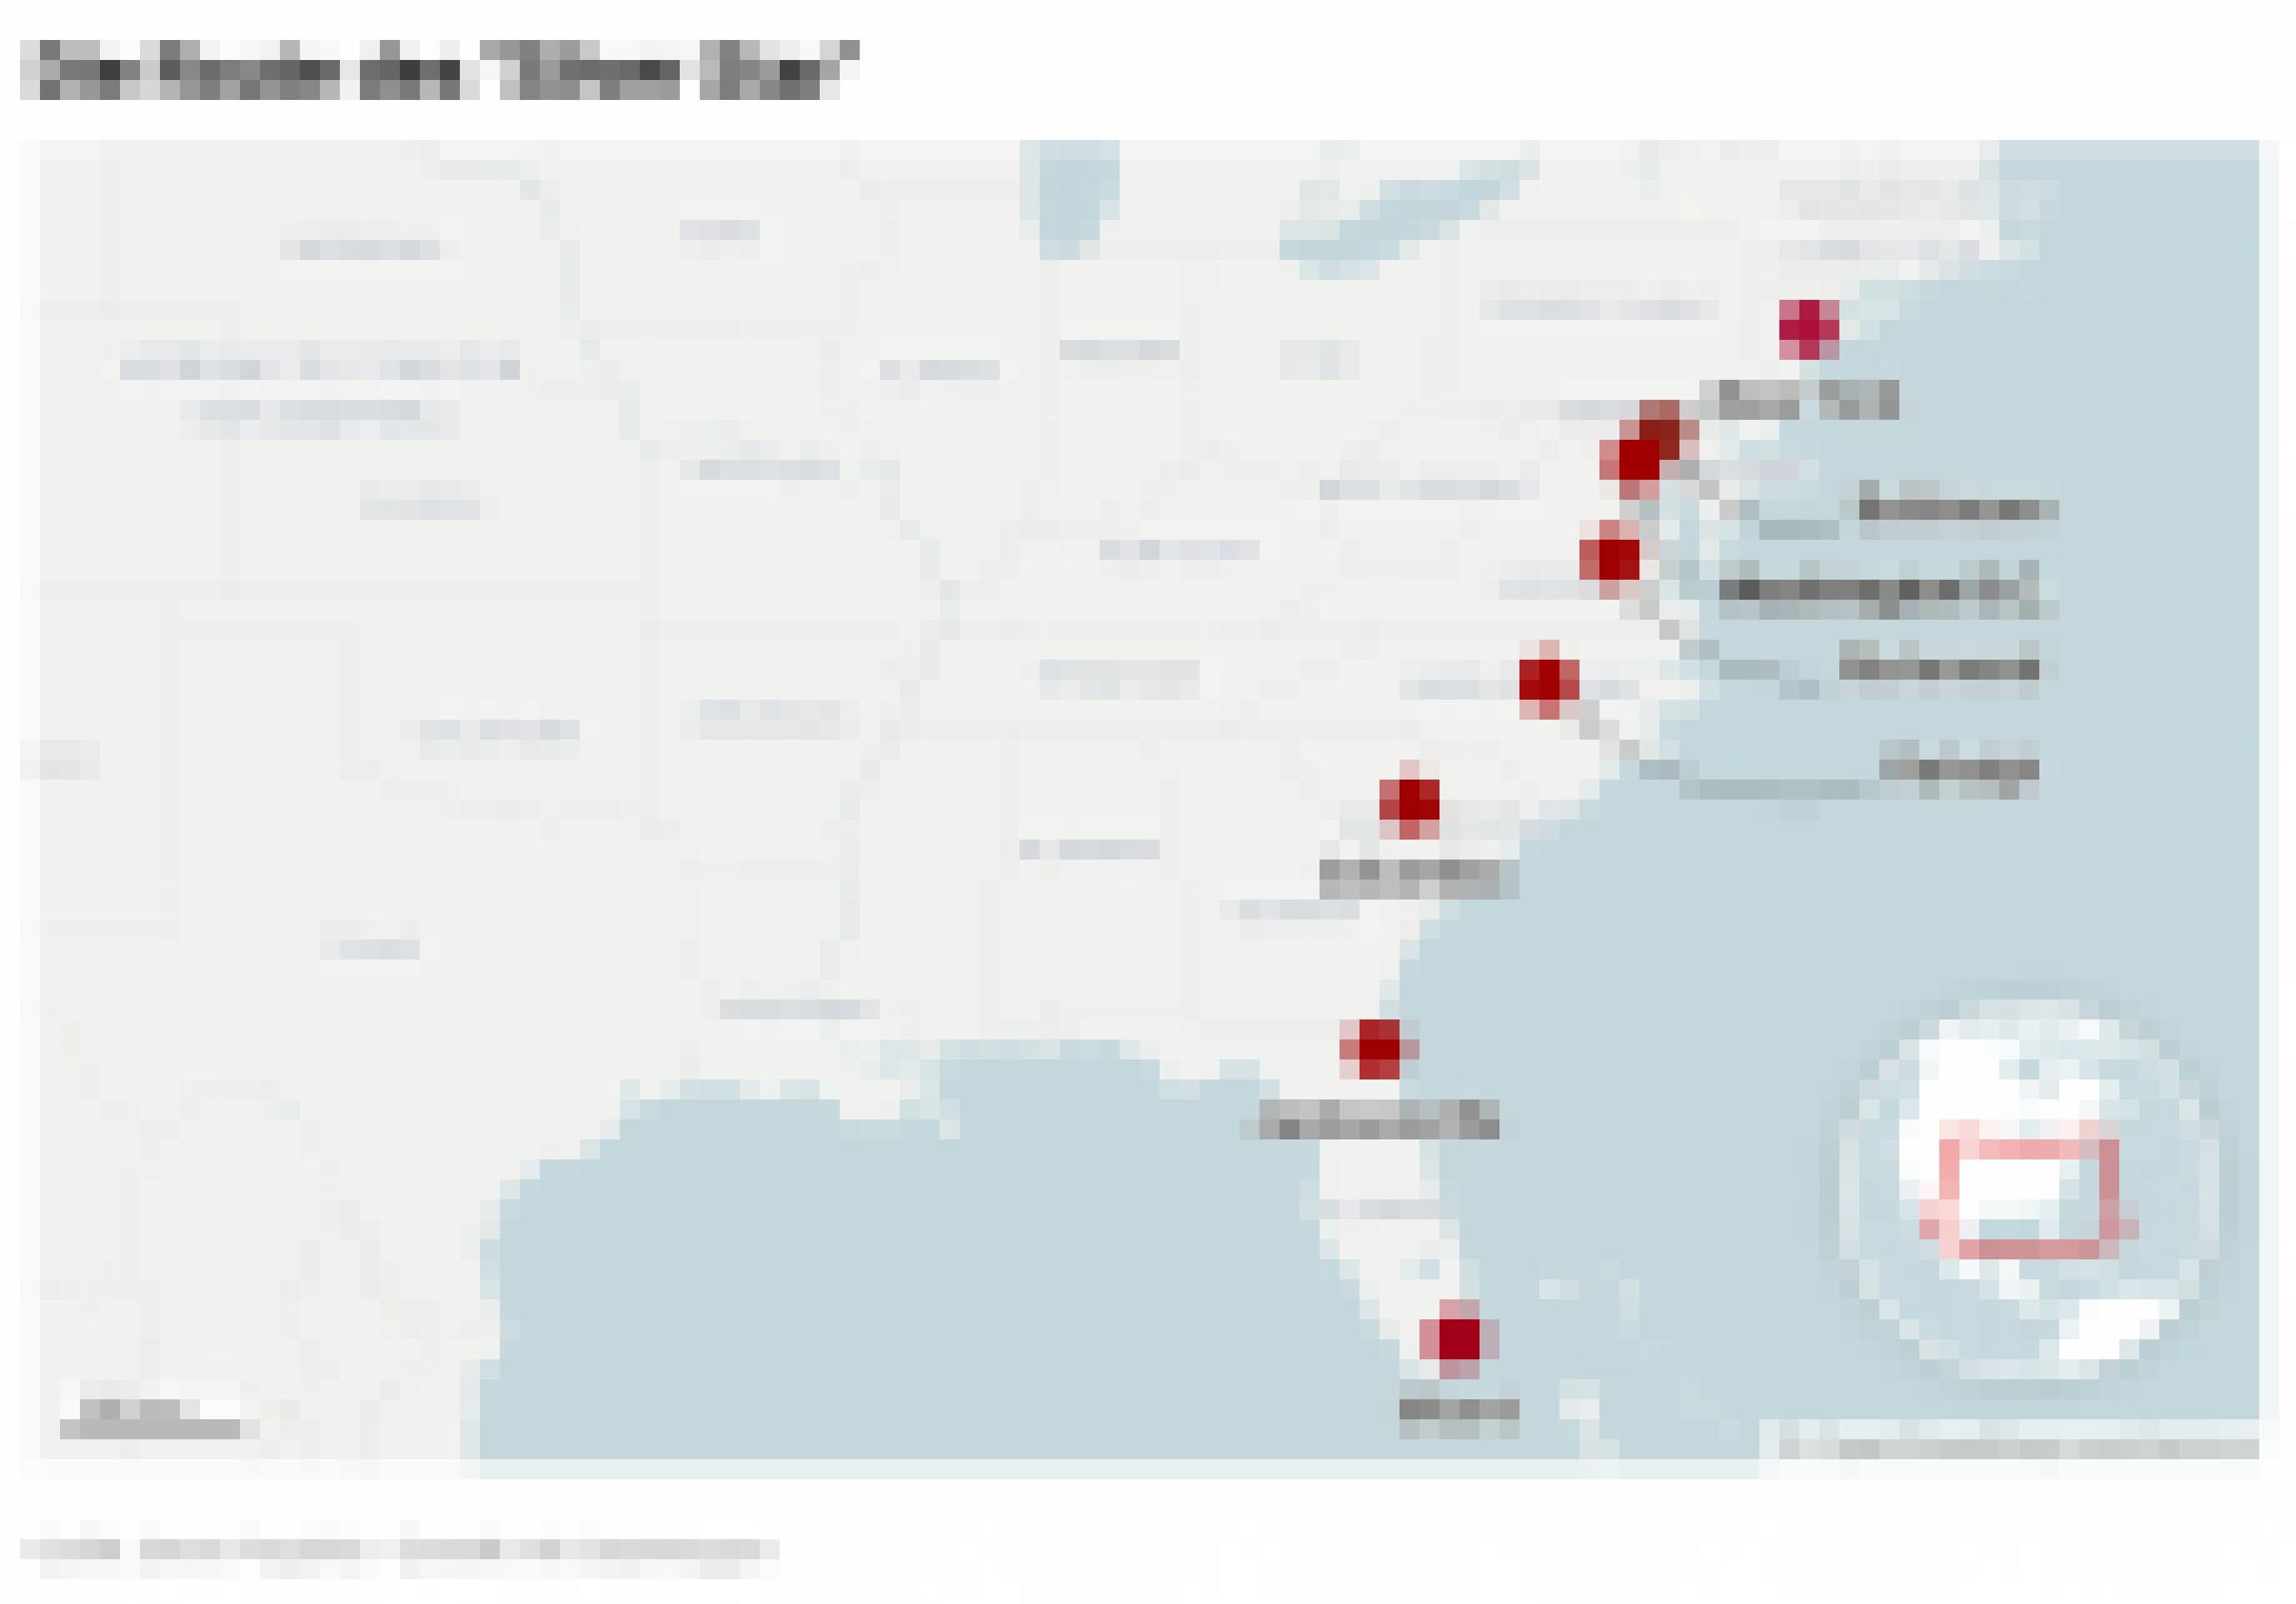 Landkarte zeigt Streckenverlauf des Silver-Star-Zuges an der amerikanischen Ostküste